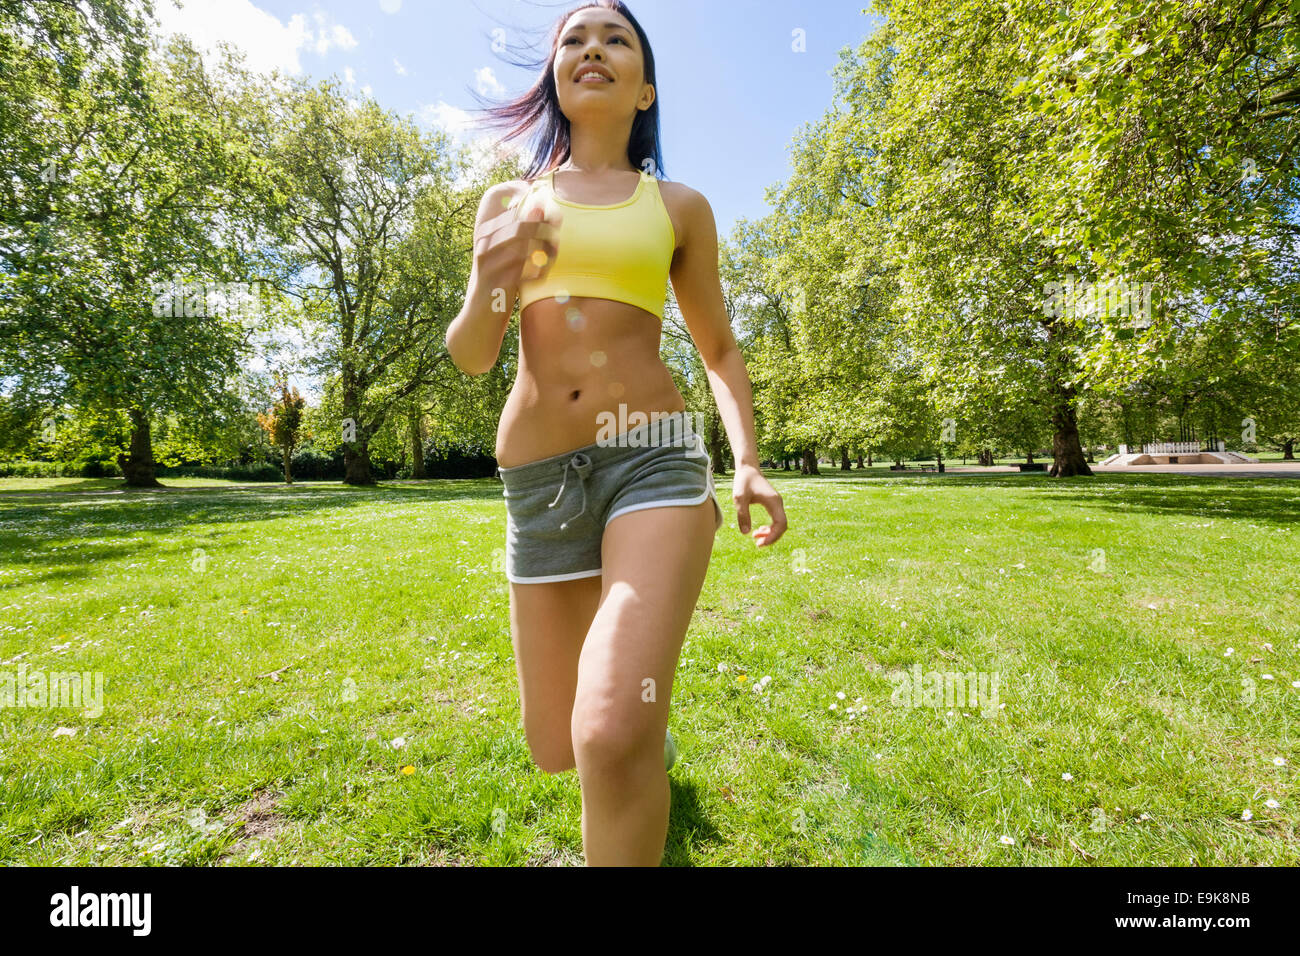 Les jeunes fit woman jogging at park Banque D'Images